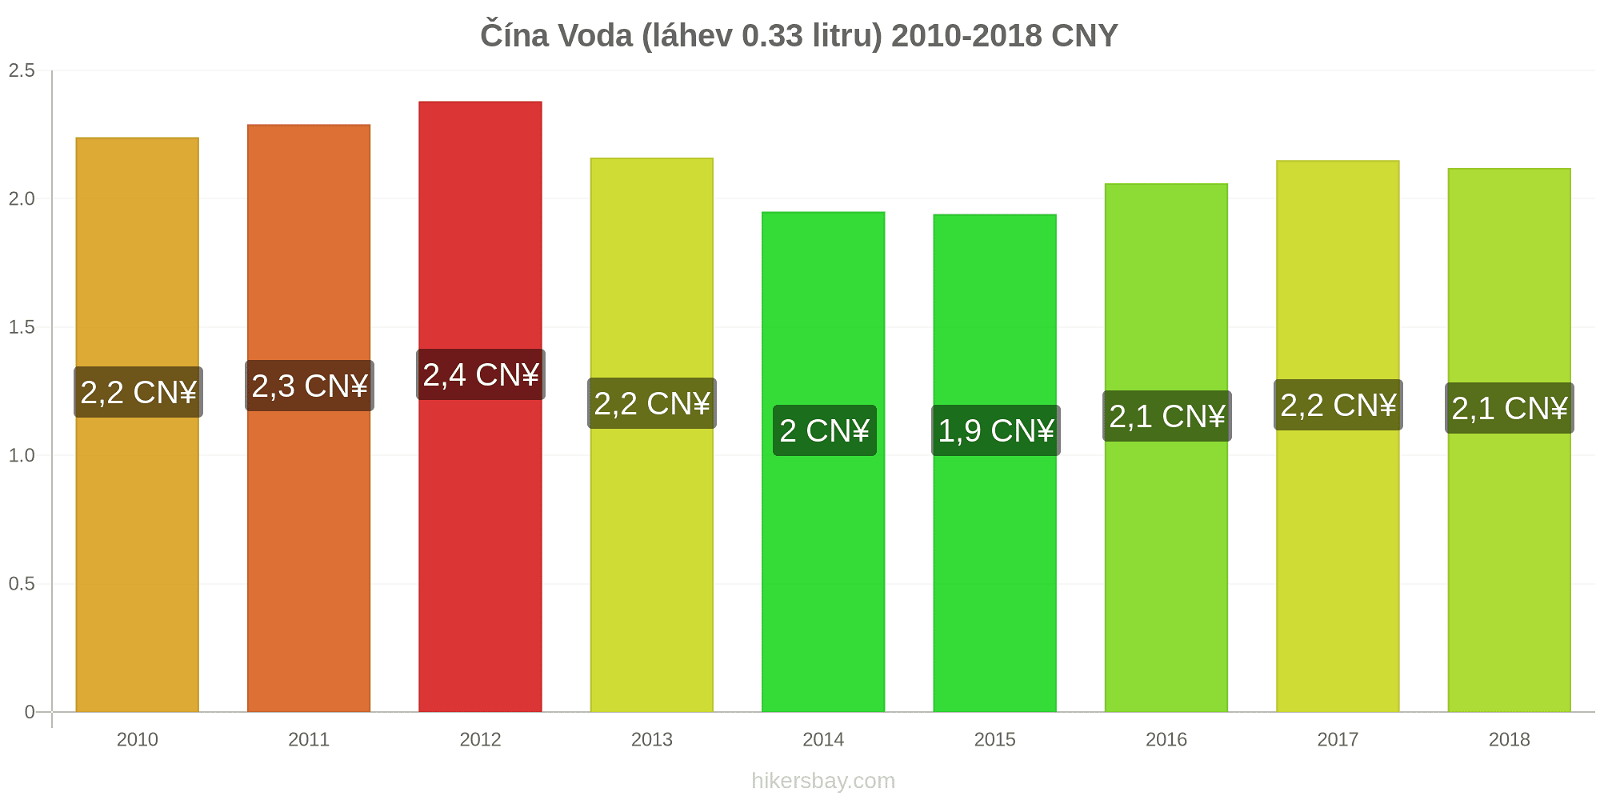 Čína změny cen Voda (láhev 0.33 litru) hikersbay.com